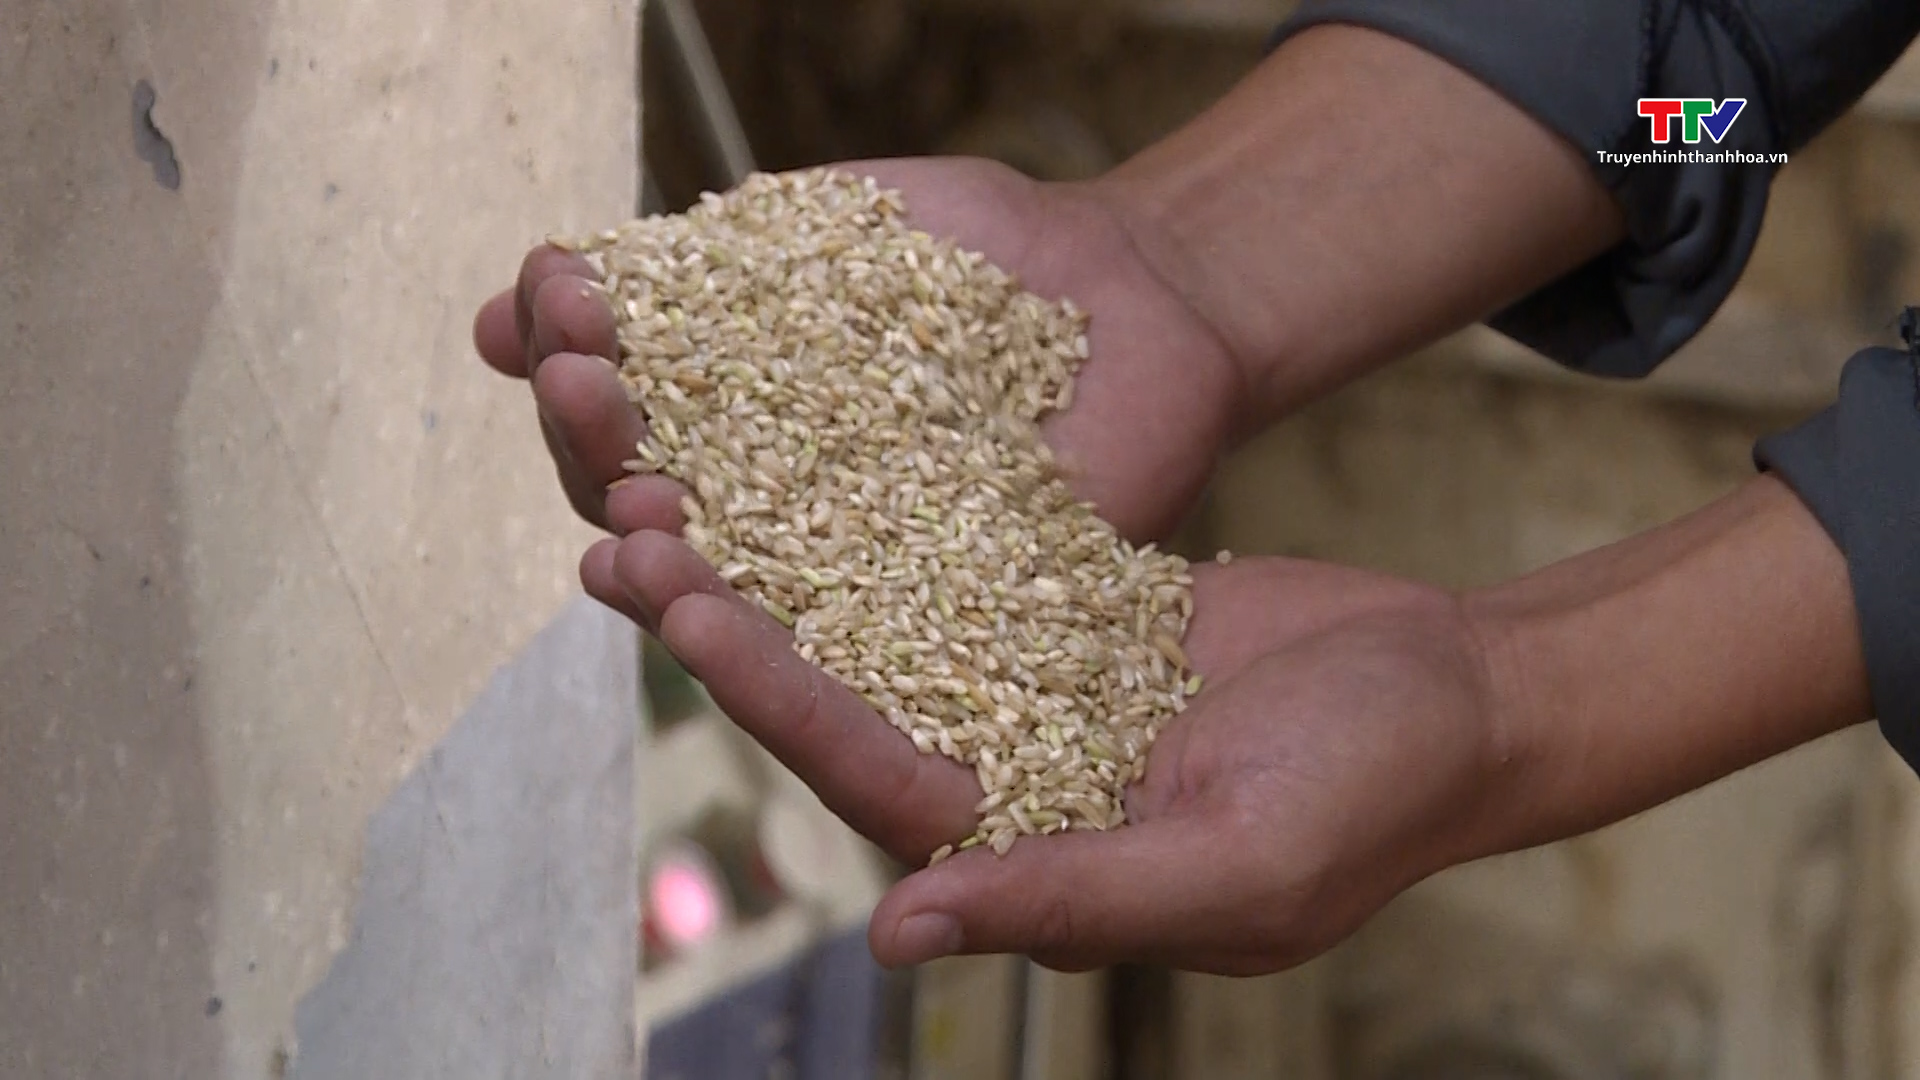 Ứng dụng khoa học công nghệ trong sản xuất chế biến lúa gạo - Ảnh 5.